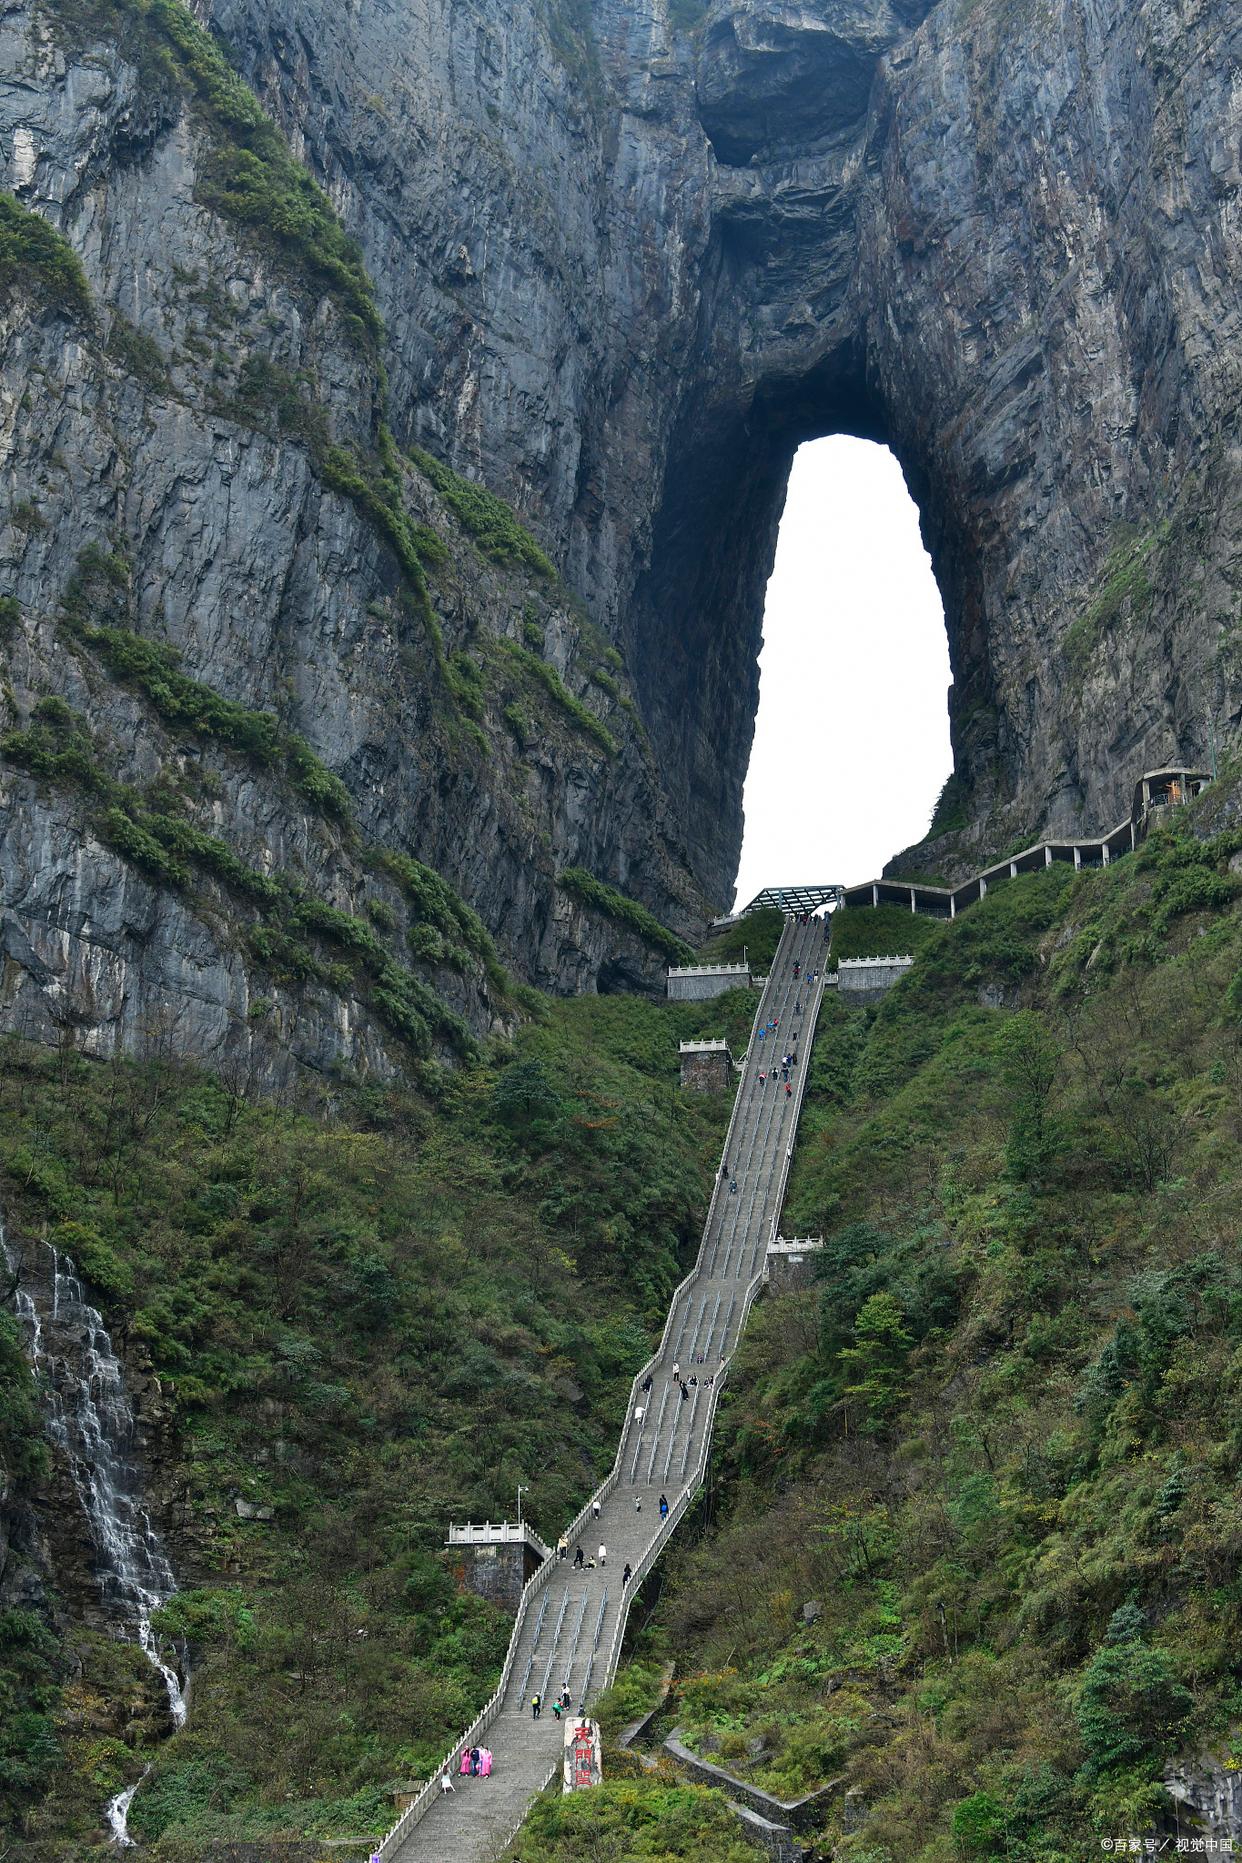 张家界的天门山天门洞，是天门山的标志性景点，也是通往仙境的神秘大门。这个天然形成的巨大石洞，高约13